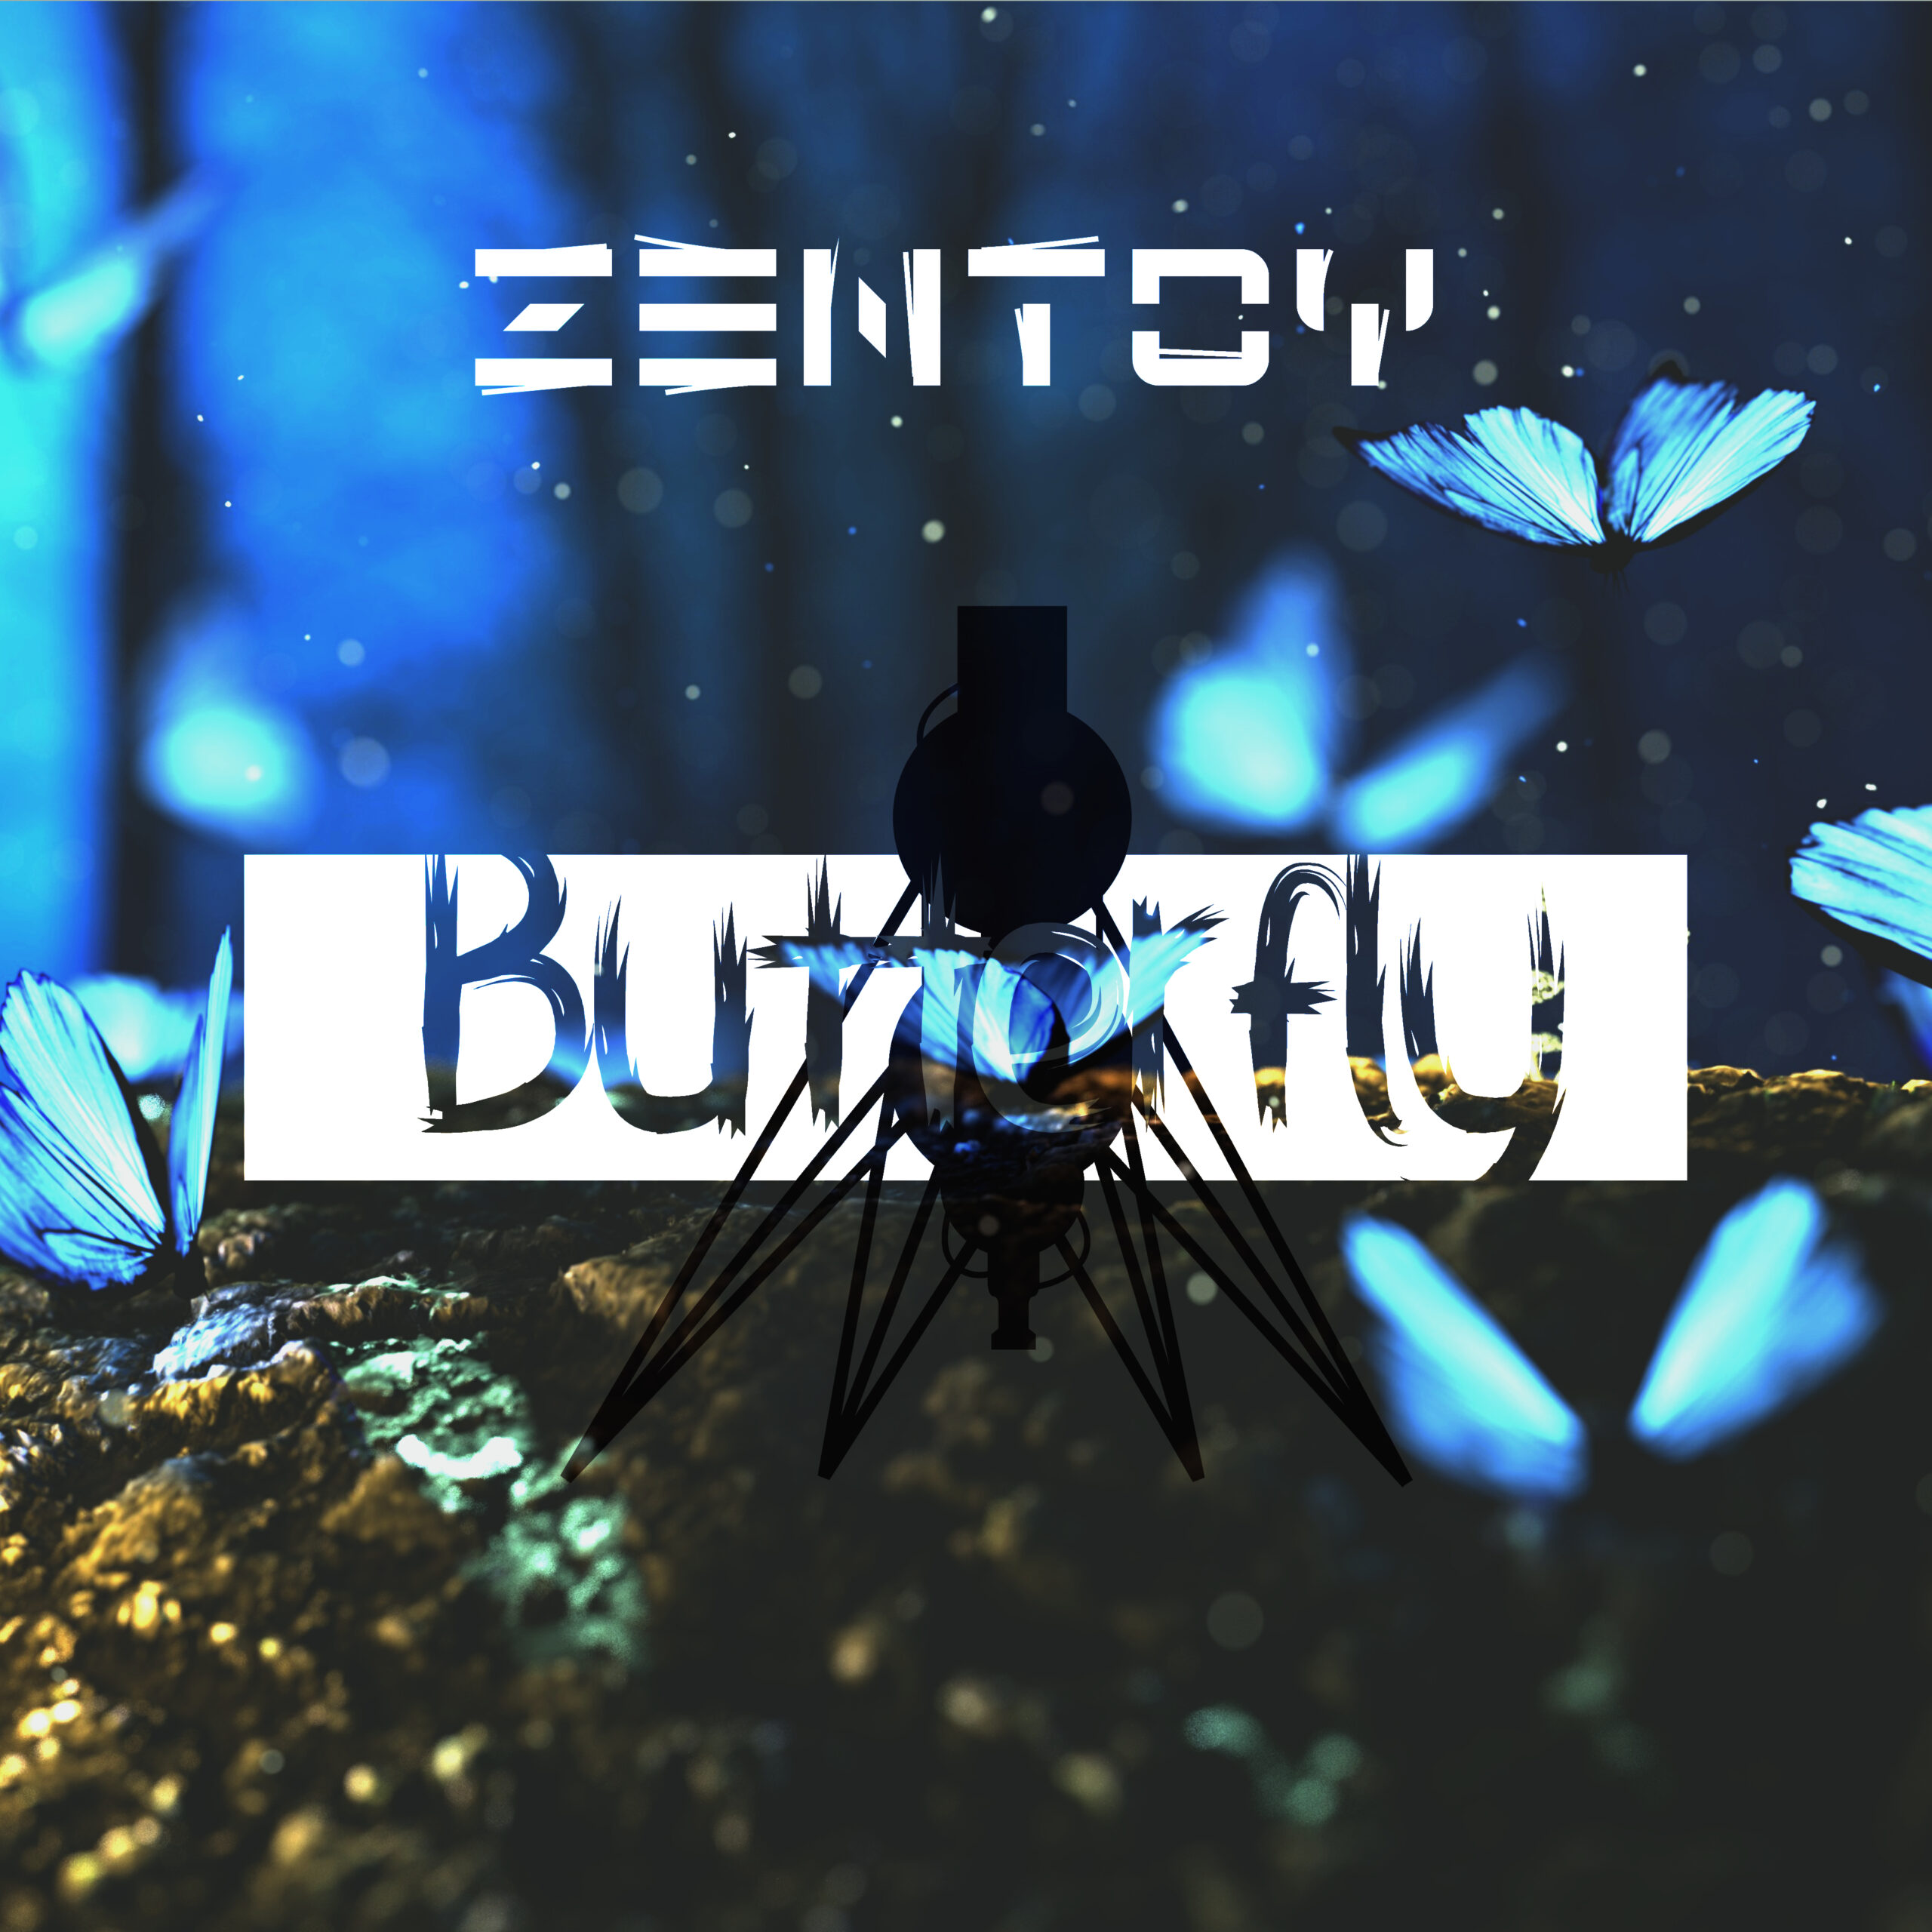 ZenToy - Butterfly